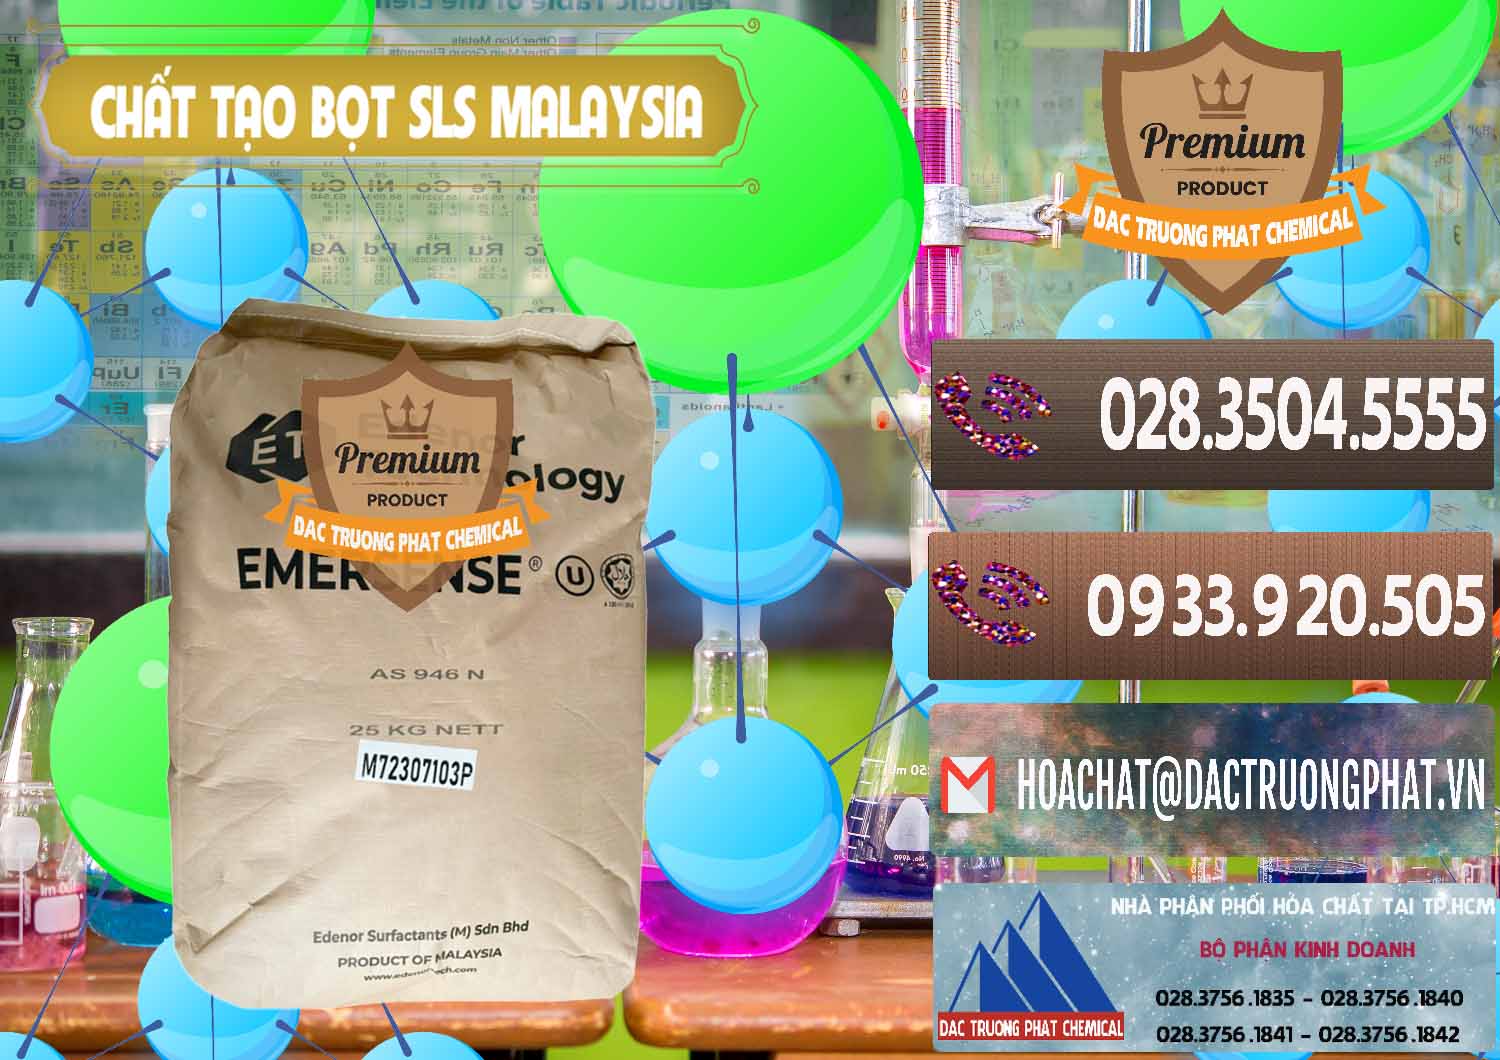 Cty bán và cung ứng Chất Tạo Bọt SLS Emersense Mã Lai Malaysia - 0381 - Cung ứng - phân phối hóa chất tại TP.HCM - hoachatviet.net